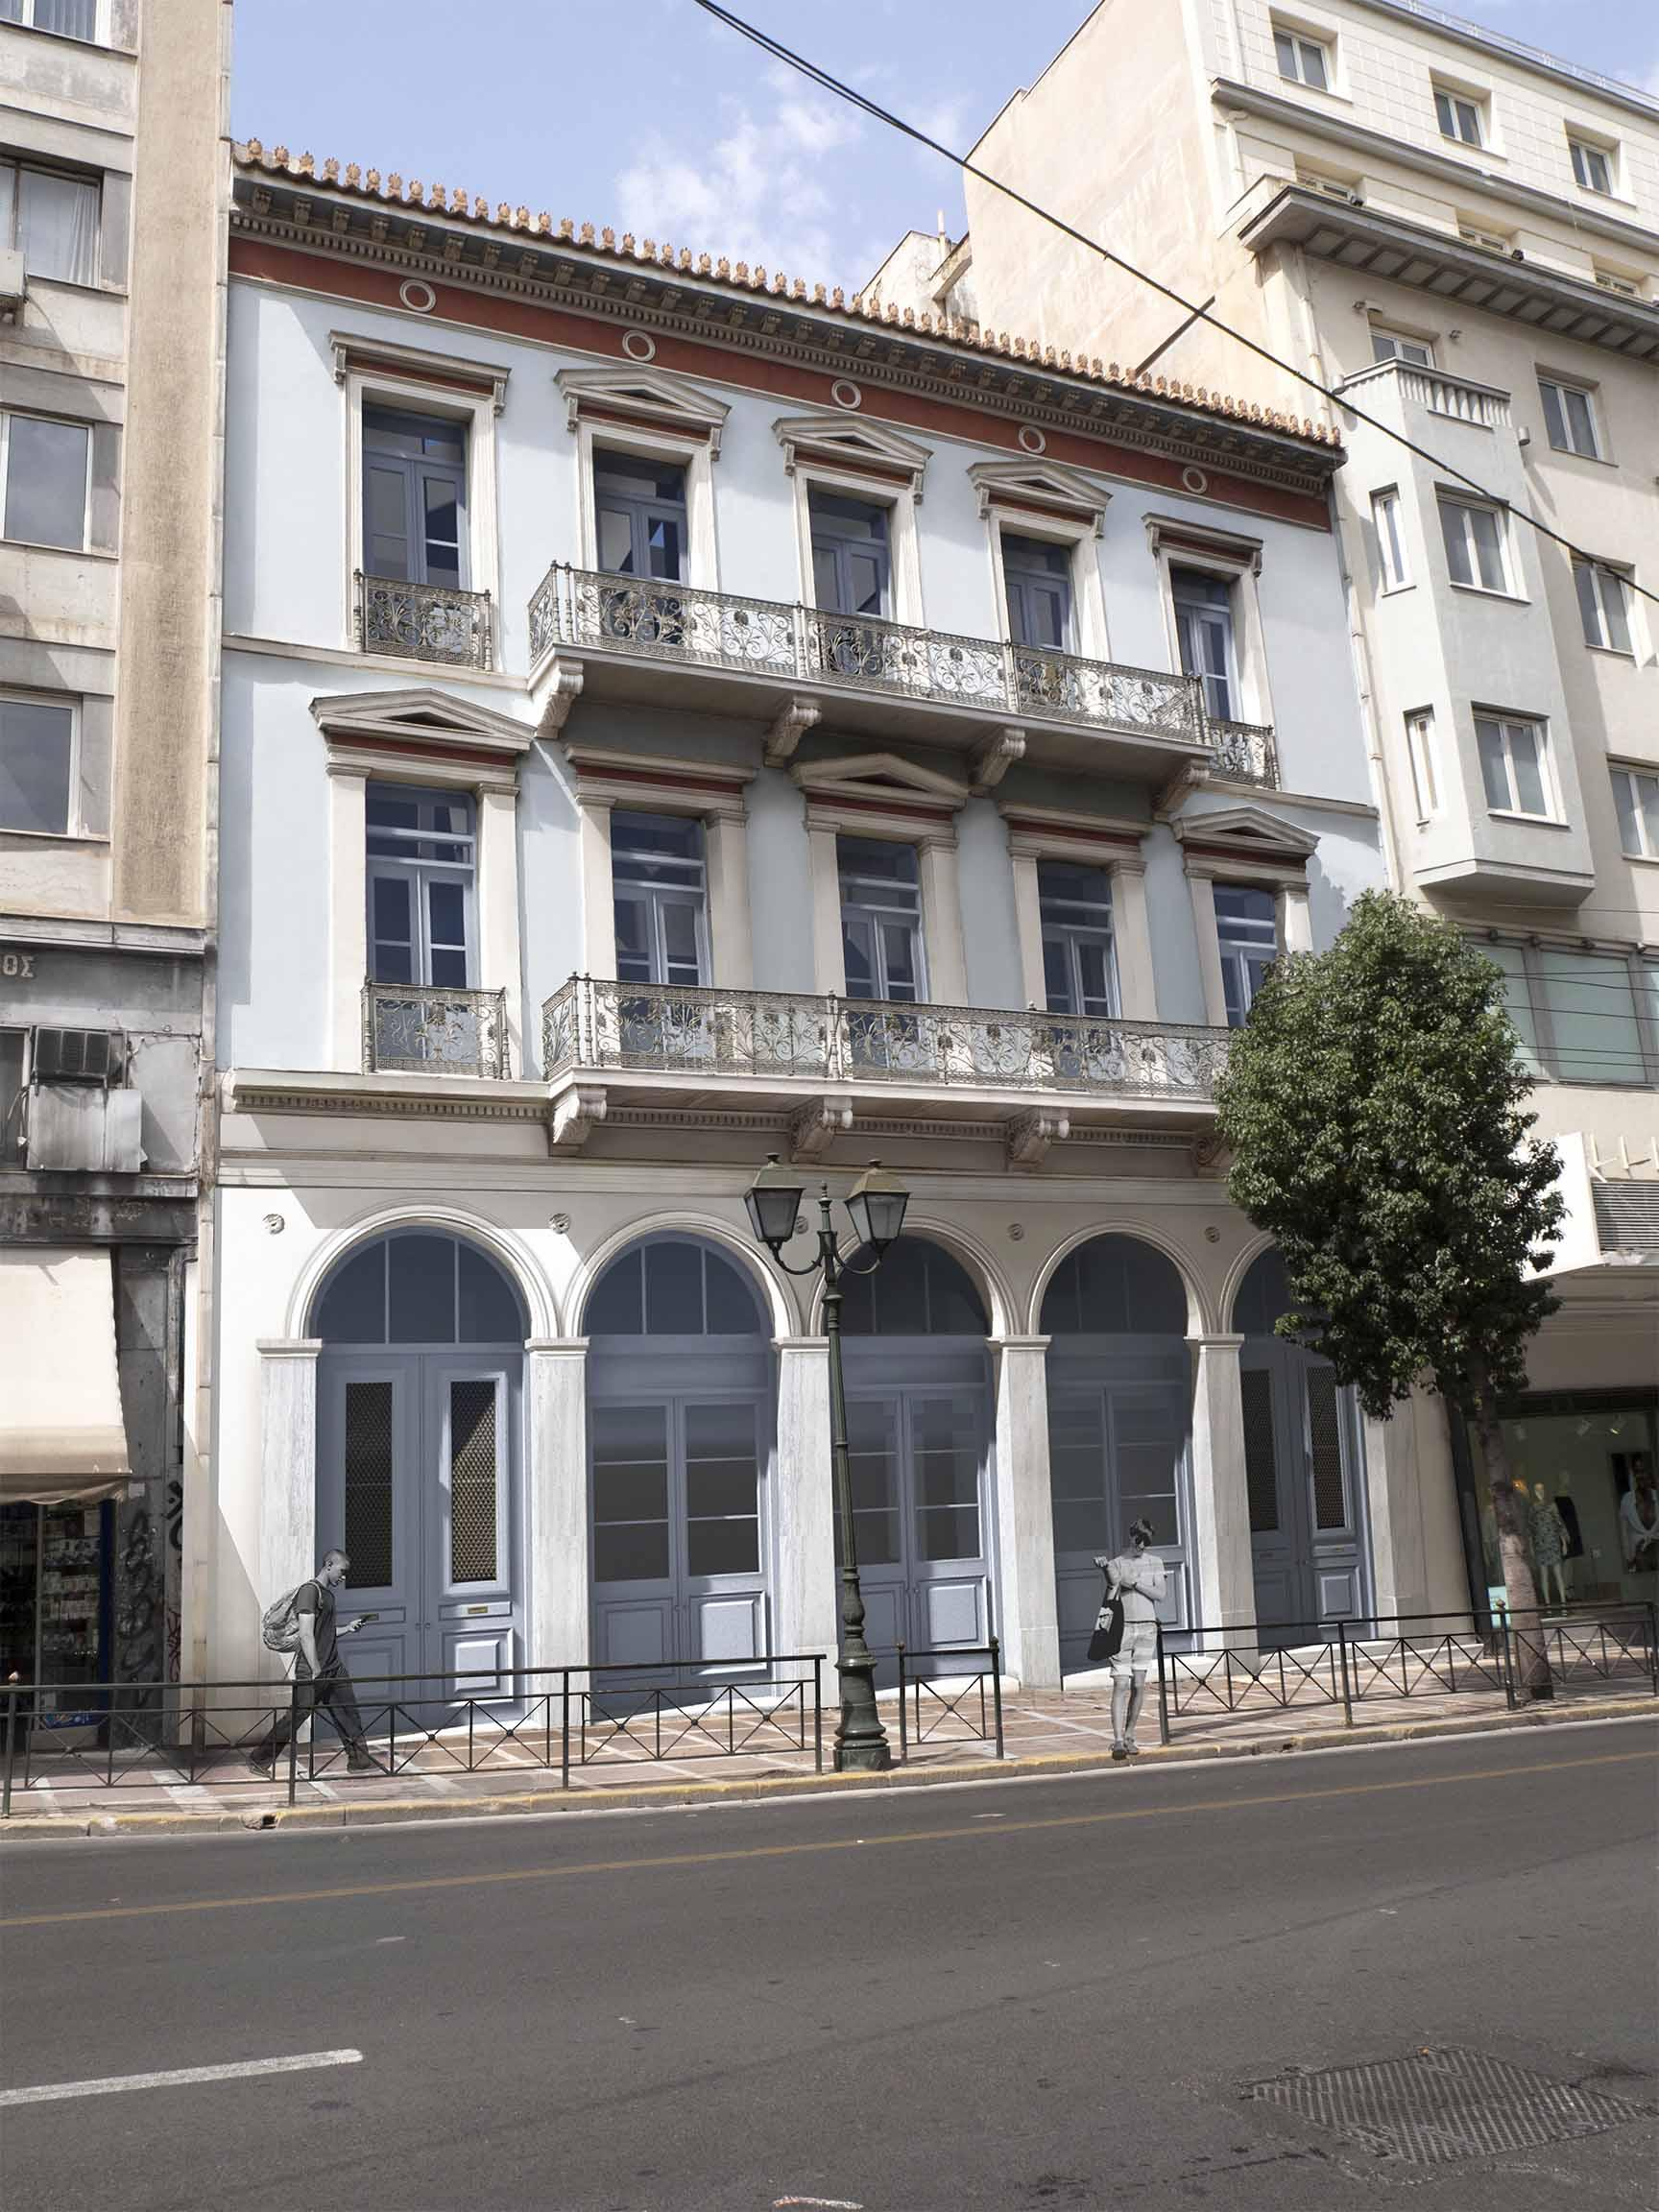 ΥΠΠΟ: H οικία του ευεργέτη Αλεξάνδρου Σούτσου στέγη για την πλούσια κληρονομιά του Θεατρικού Μουσείου